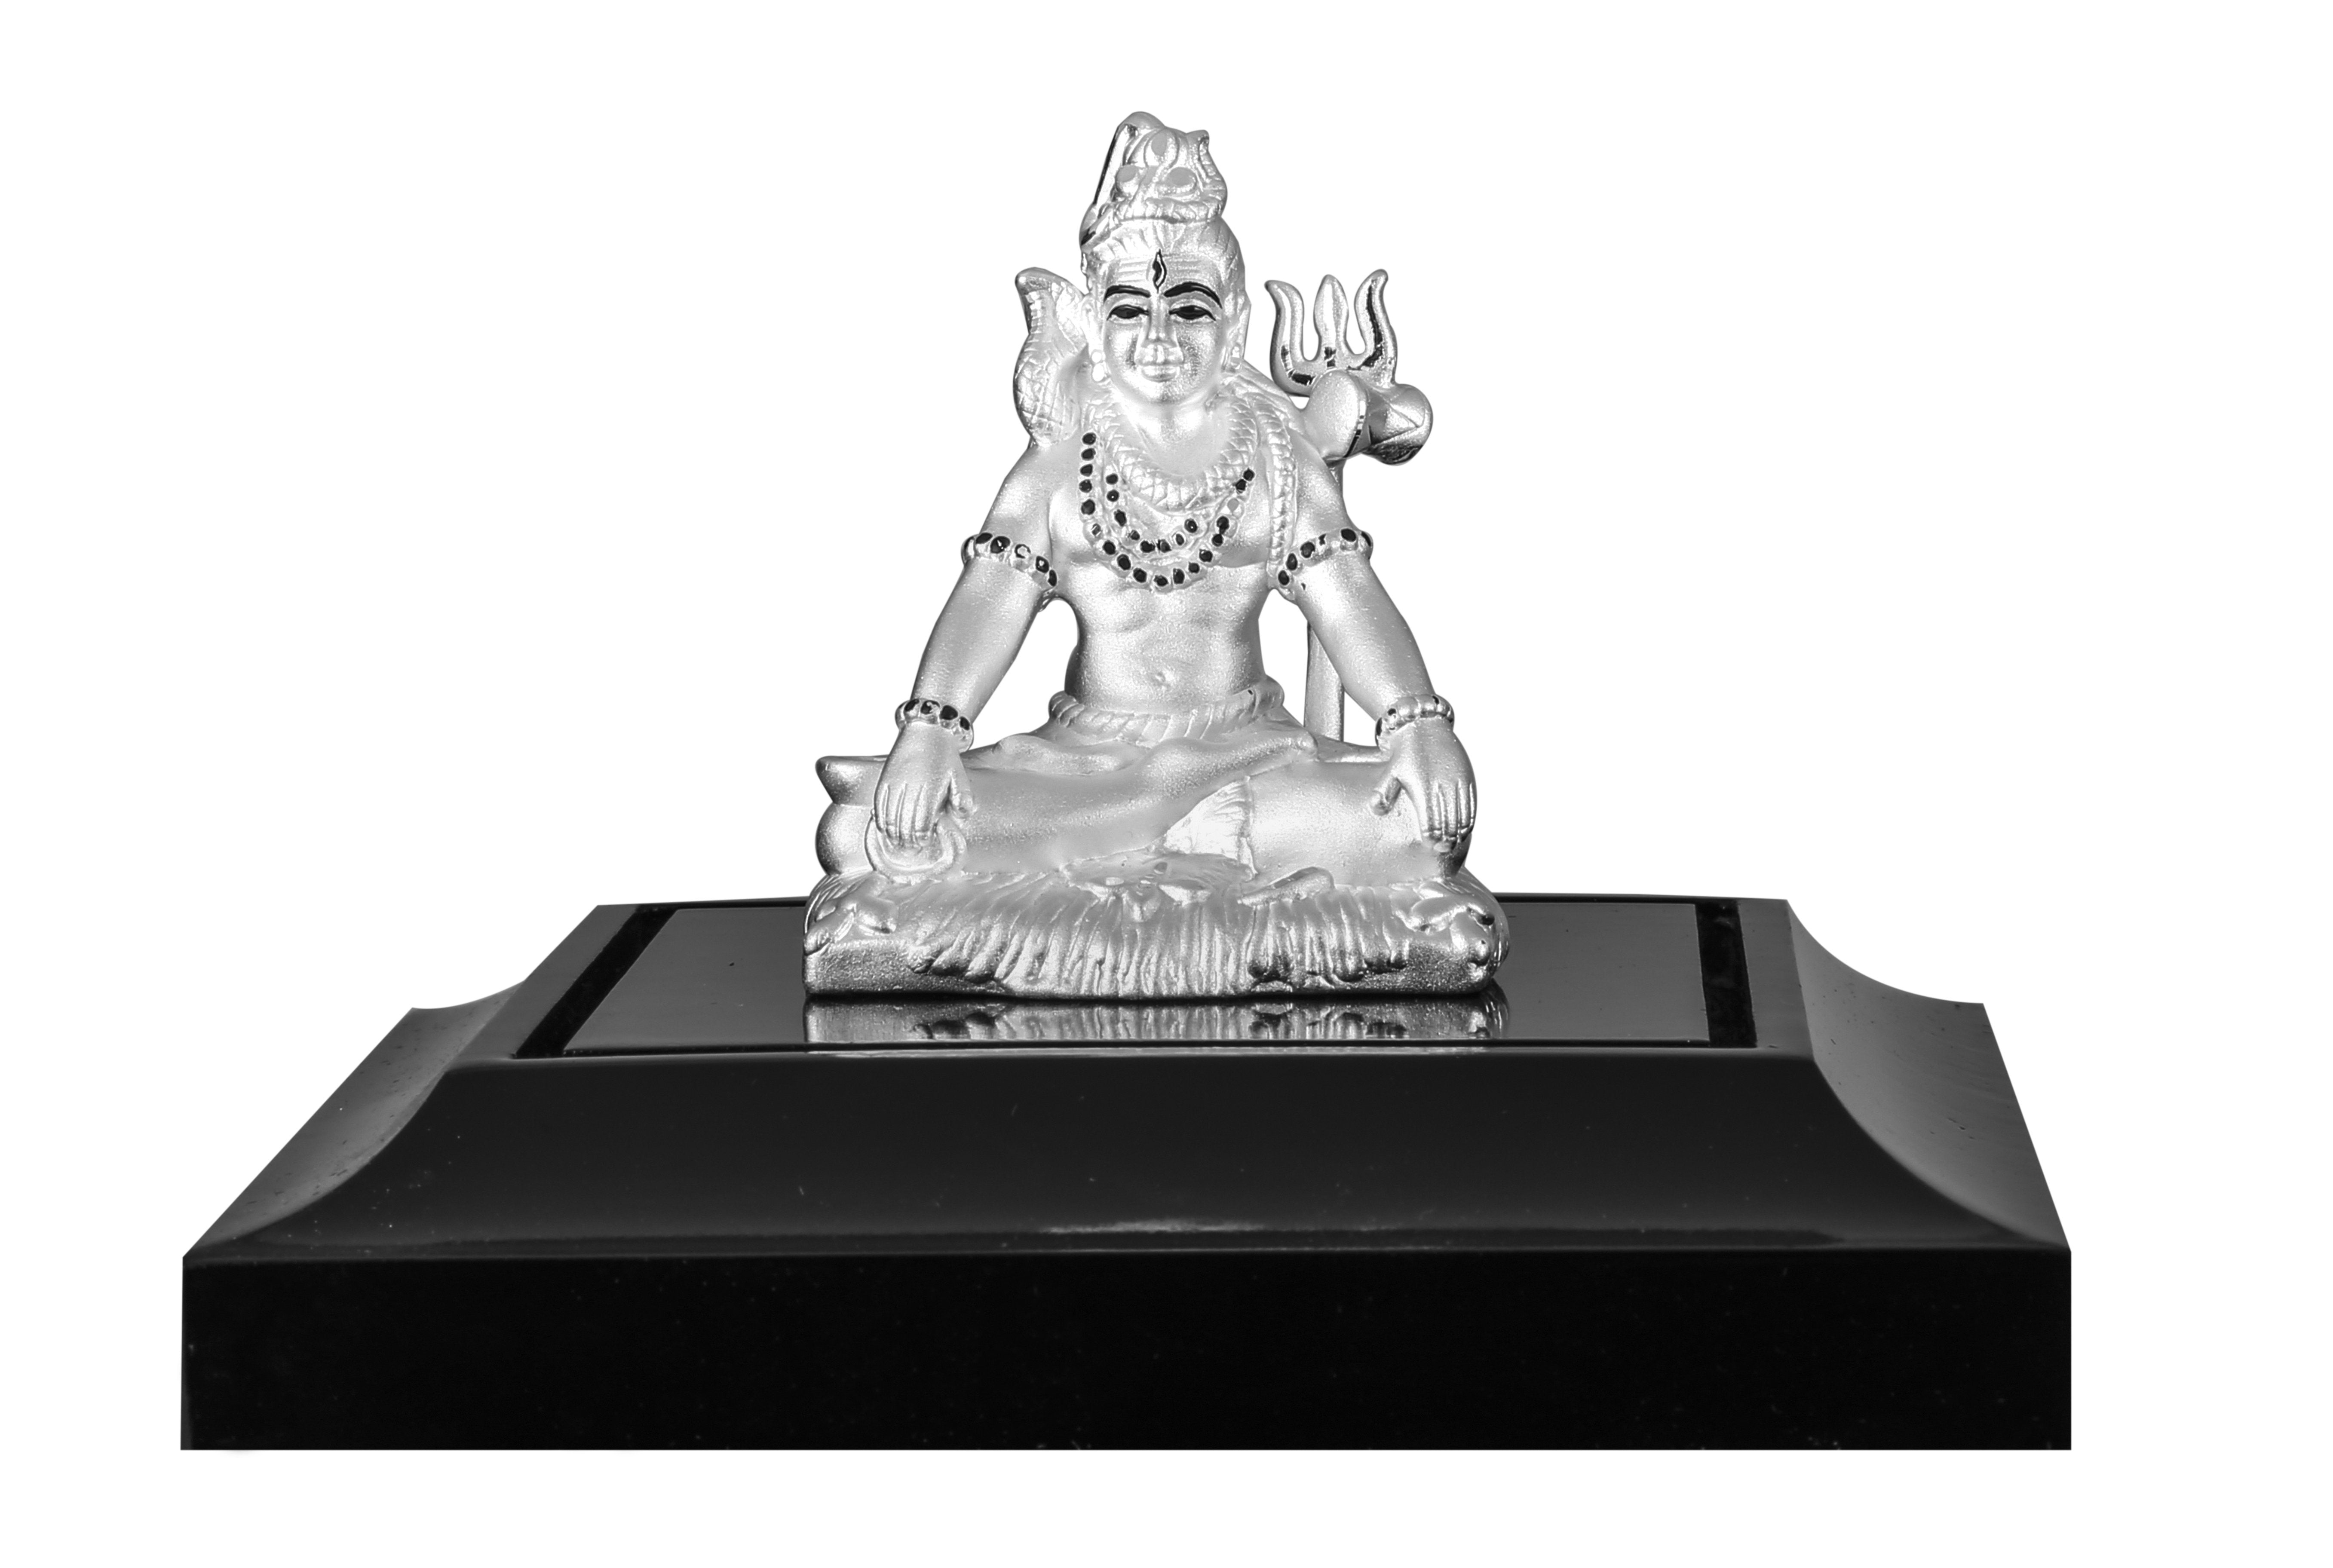 999 Pure Silver Lord Shiva Idol By Krysaliis Isvara-Krisv_03 Idols